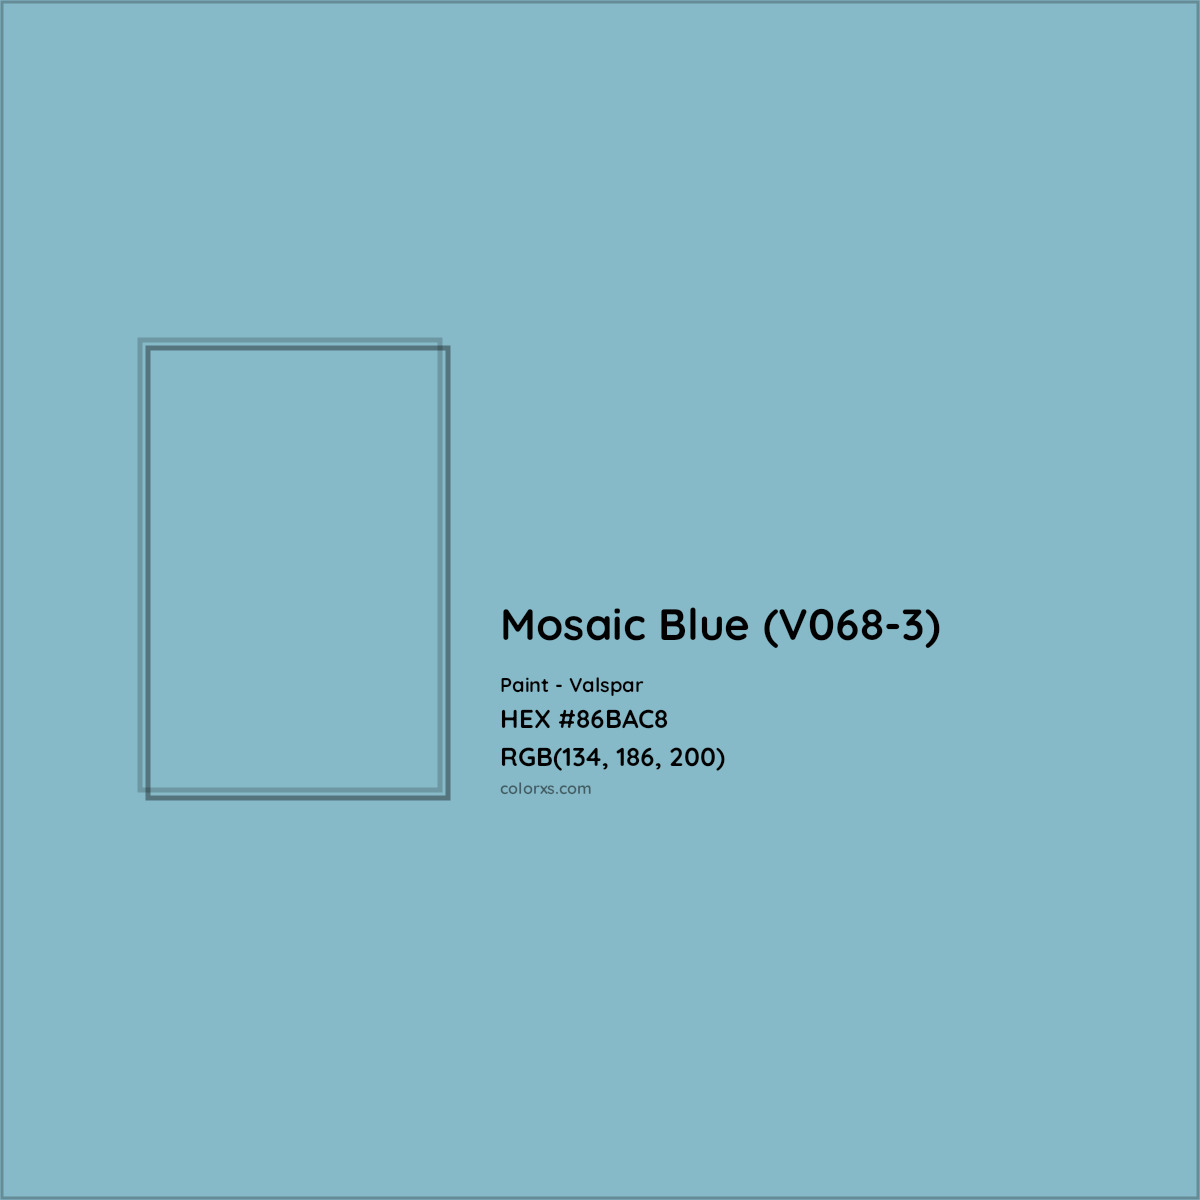 HEX #86BAC8 Mosaic Blue (V068-3) Paint Valspar - Color Code